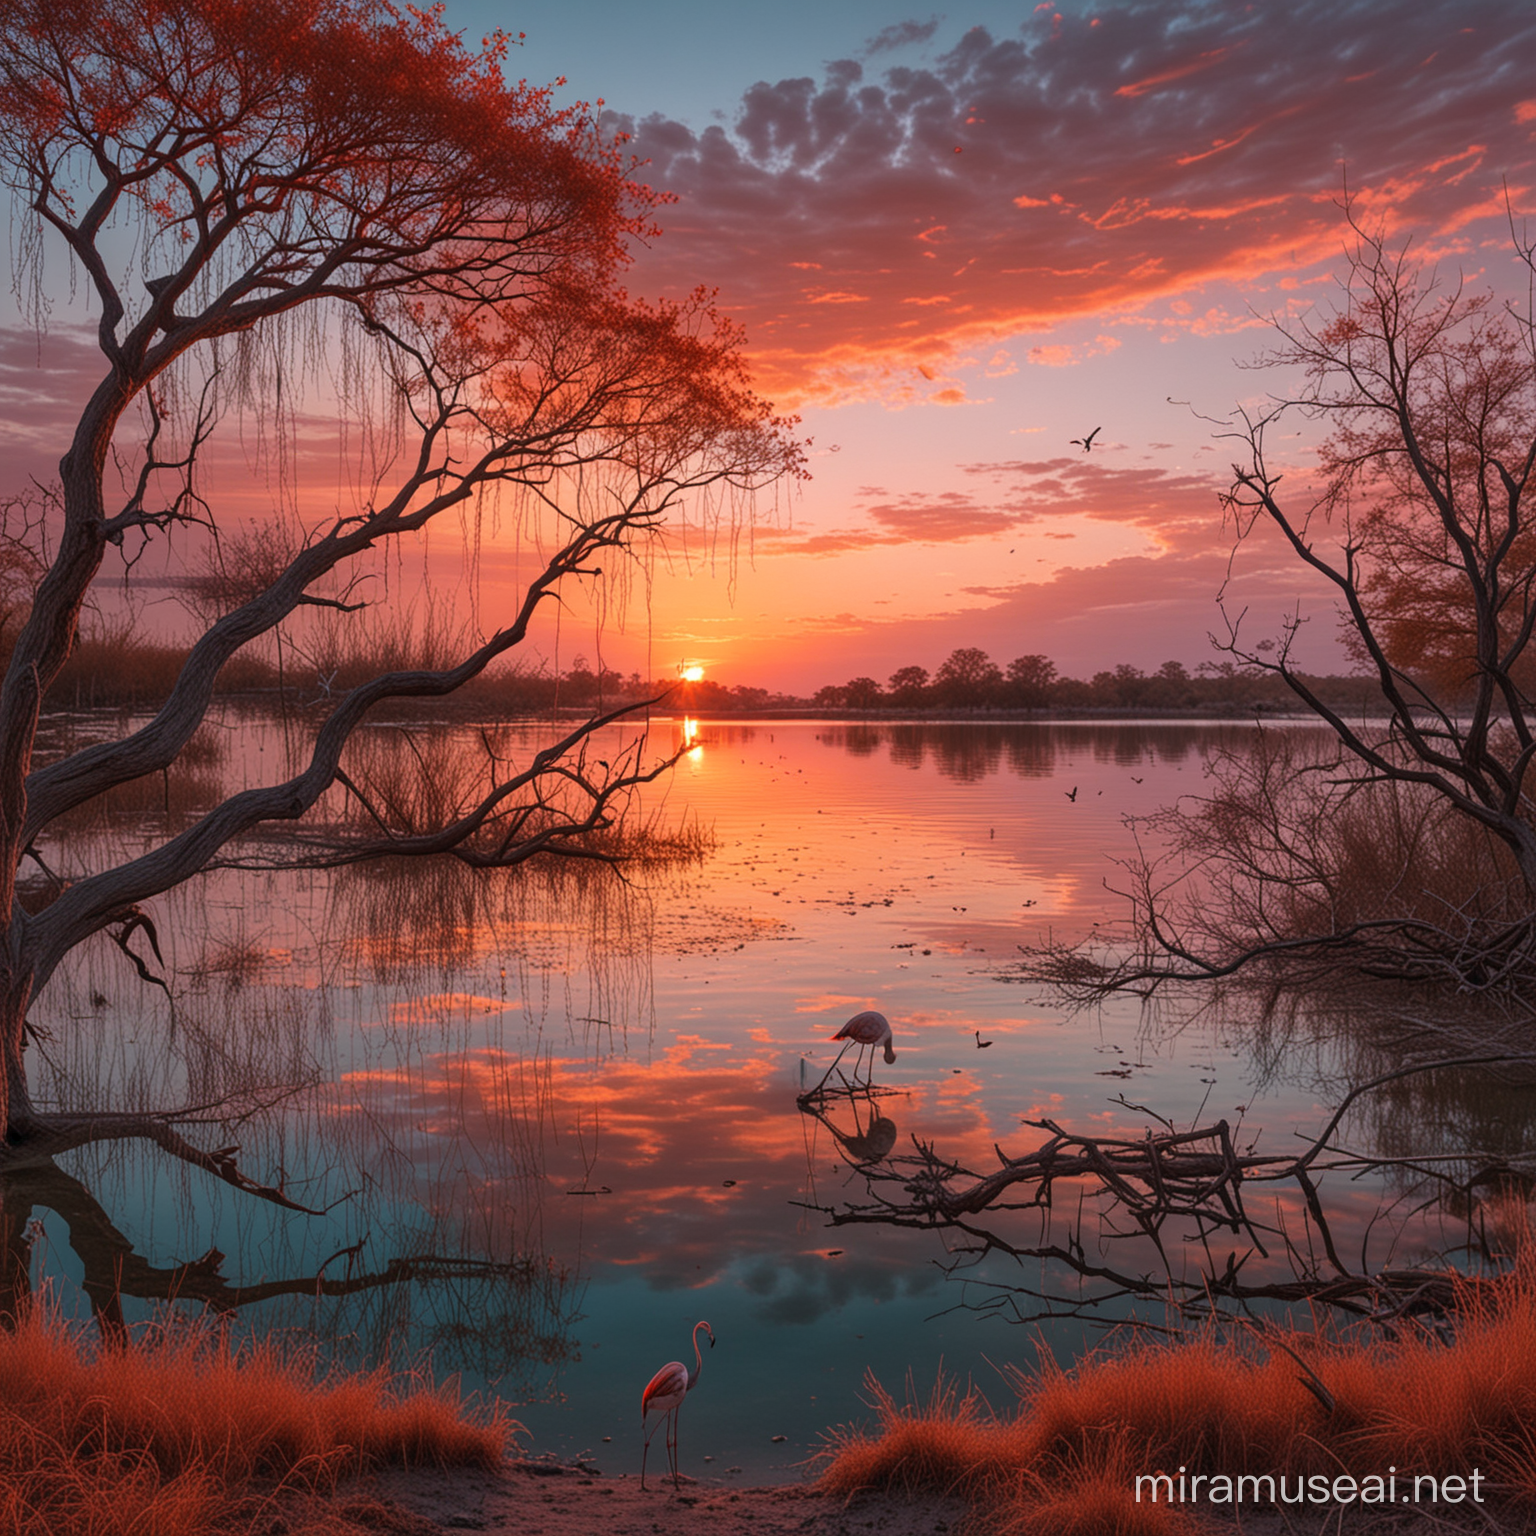 Hay un lago de aguas color azul turquesa.  Se ve una puesta de sol con el cielo rojo. En la orilla del lago hay un cerebro muy grande que está en la parte central. A la derecha se ve un árbol con las ramas secas llenas de telarañas y con una gran araña. A la izquierda hay un flamenco de patas muy, muy largas.